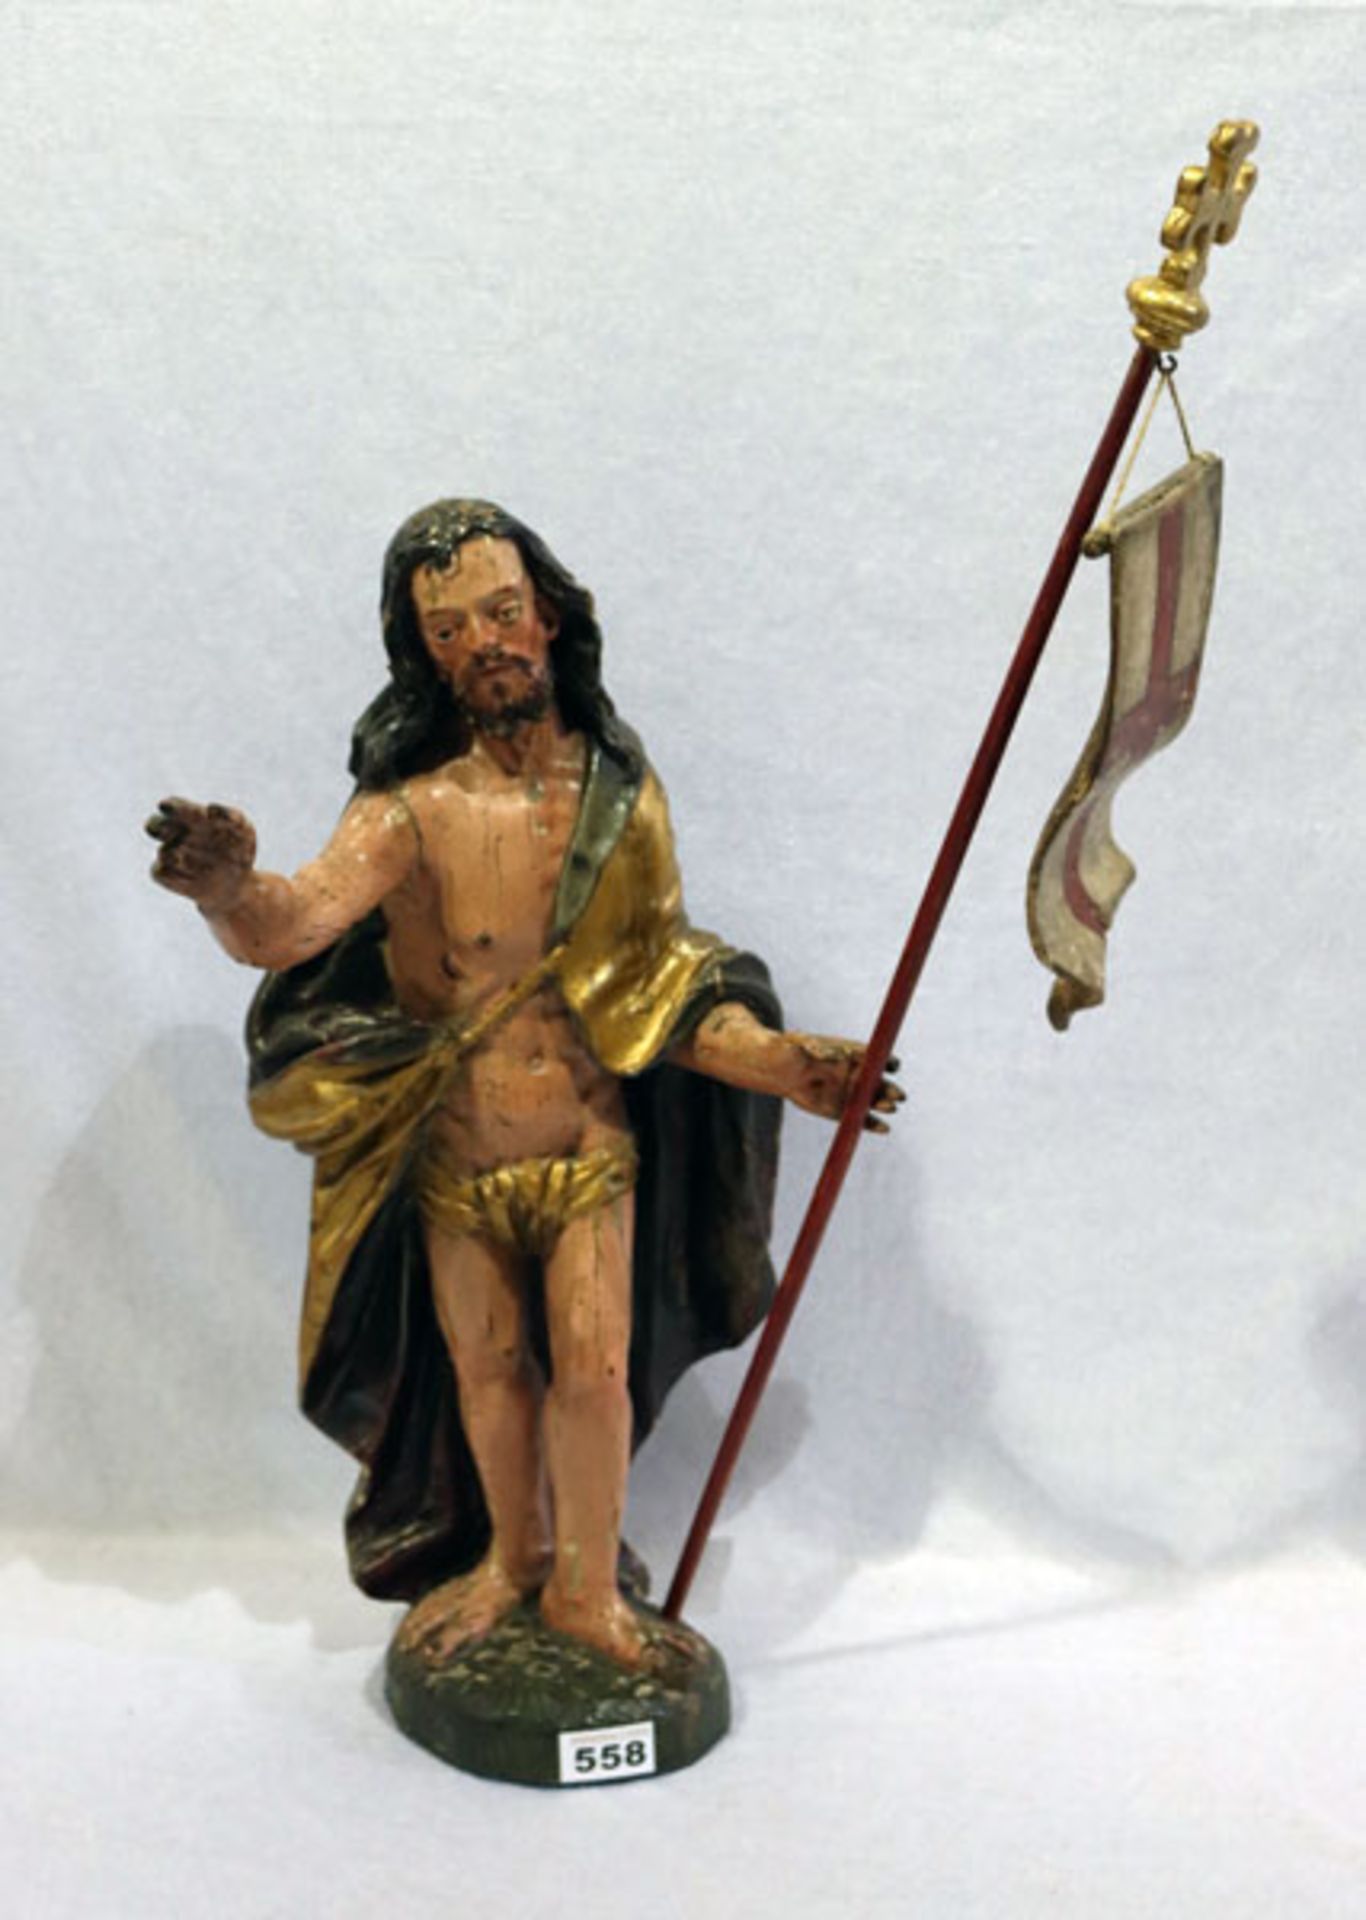 Holz Figurenskulptur 'Jesus mit Siegesfahne', um 1800, farbig gefaßt, Figur und Fassung